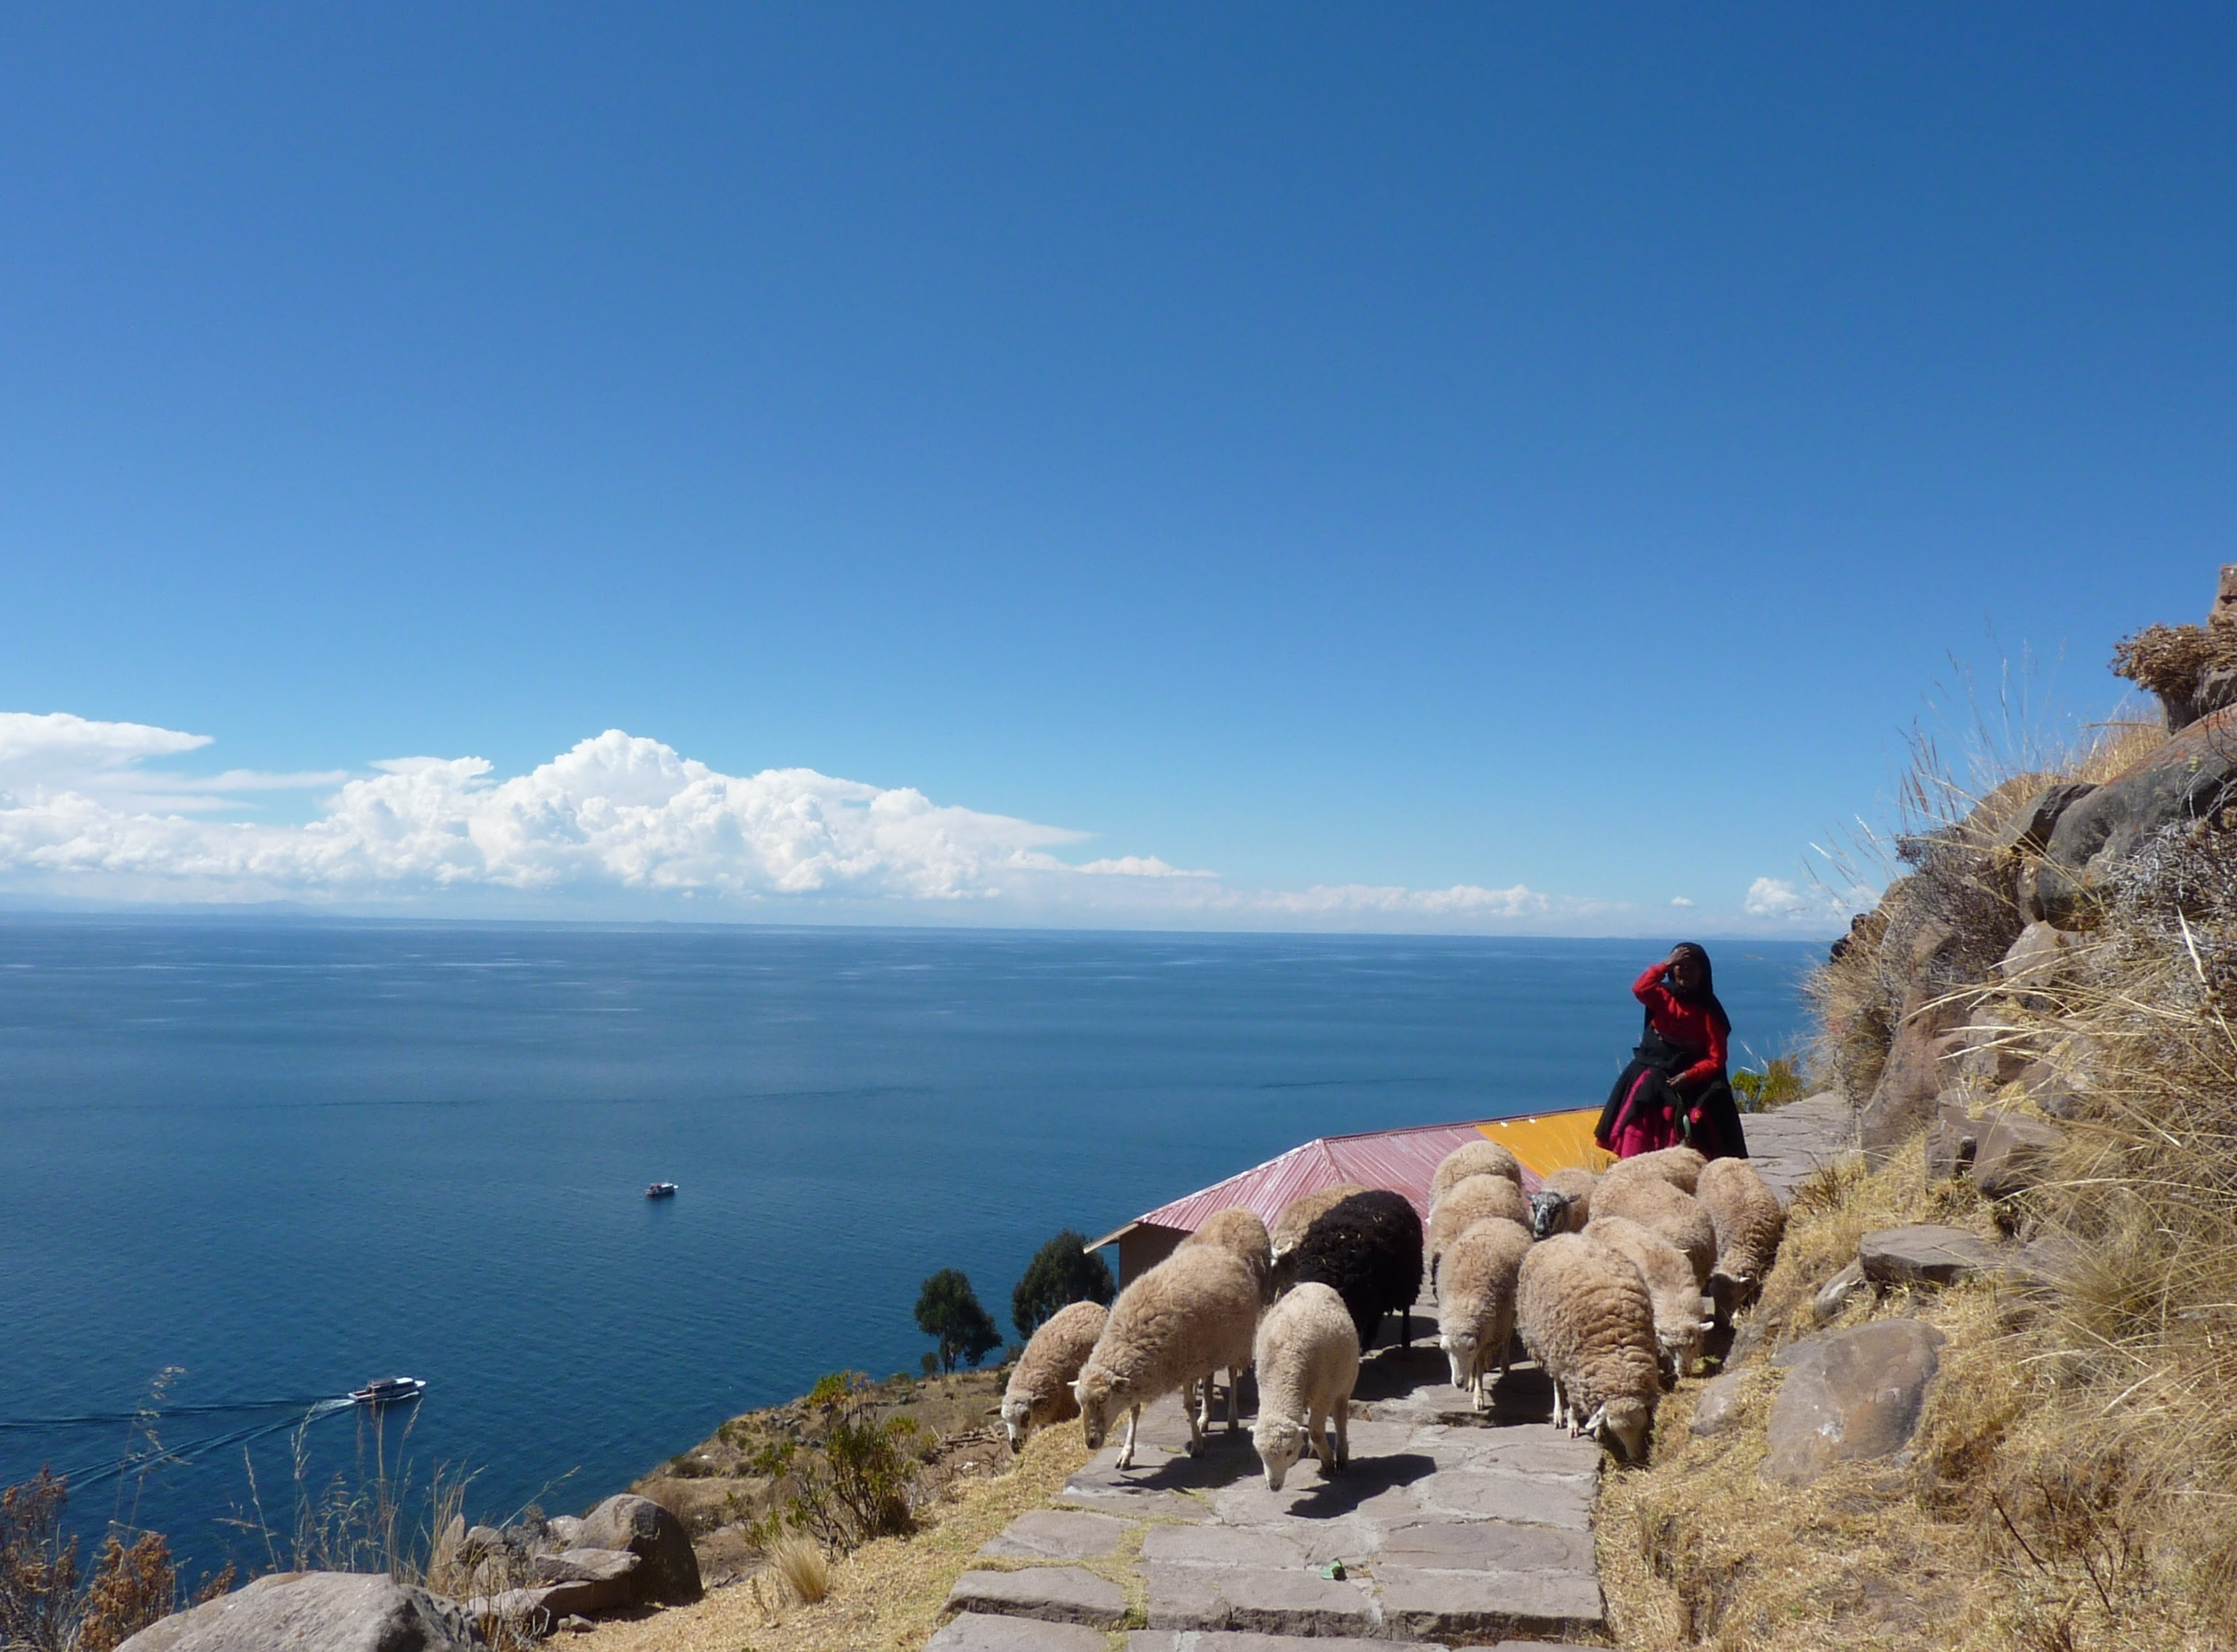 Escena cotidiana en la isla de Taquile., Lago Titicaca